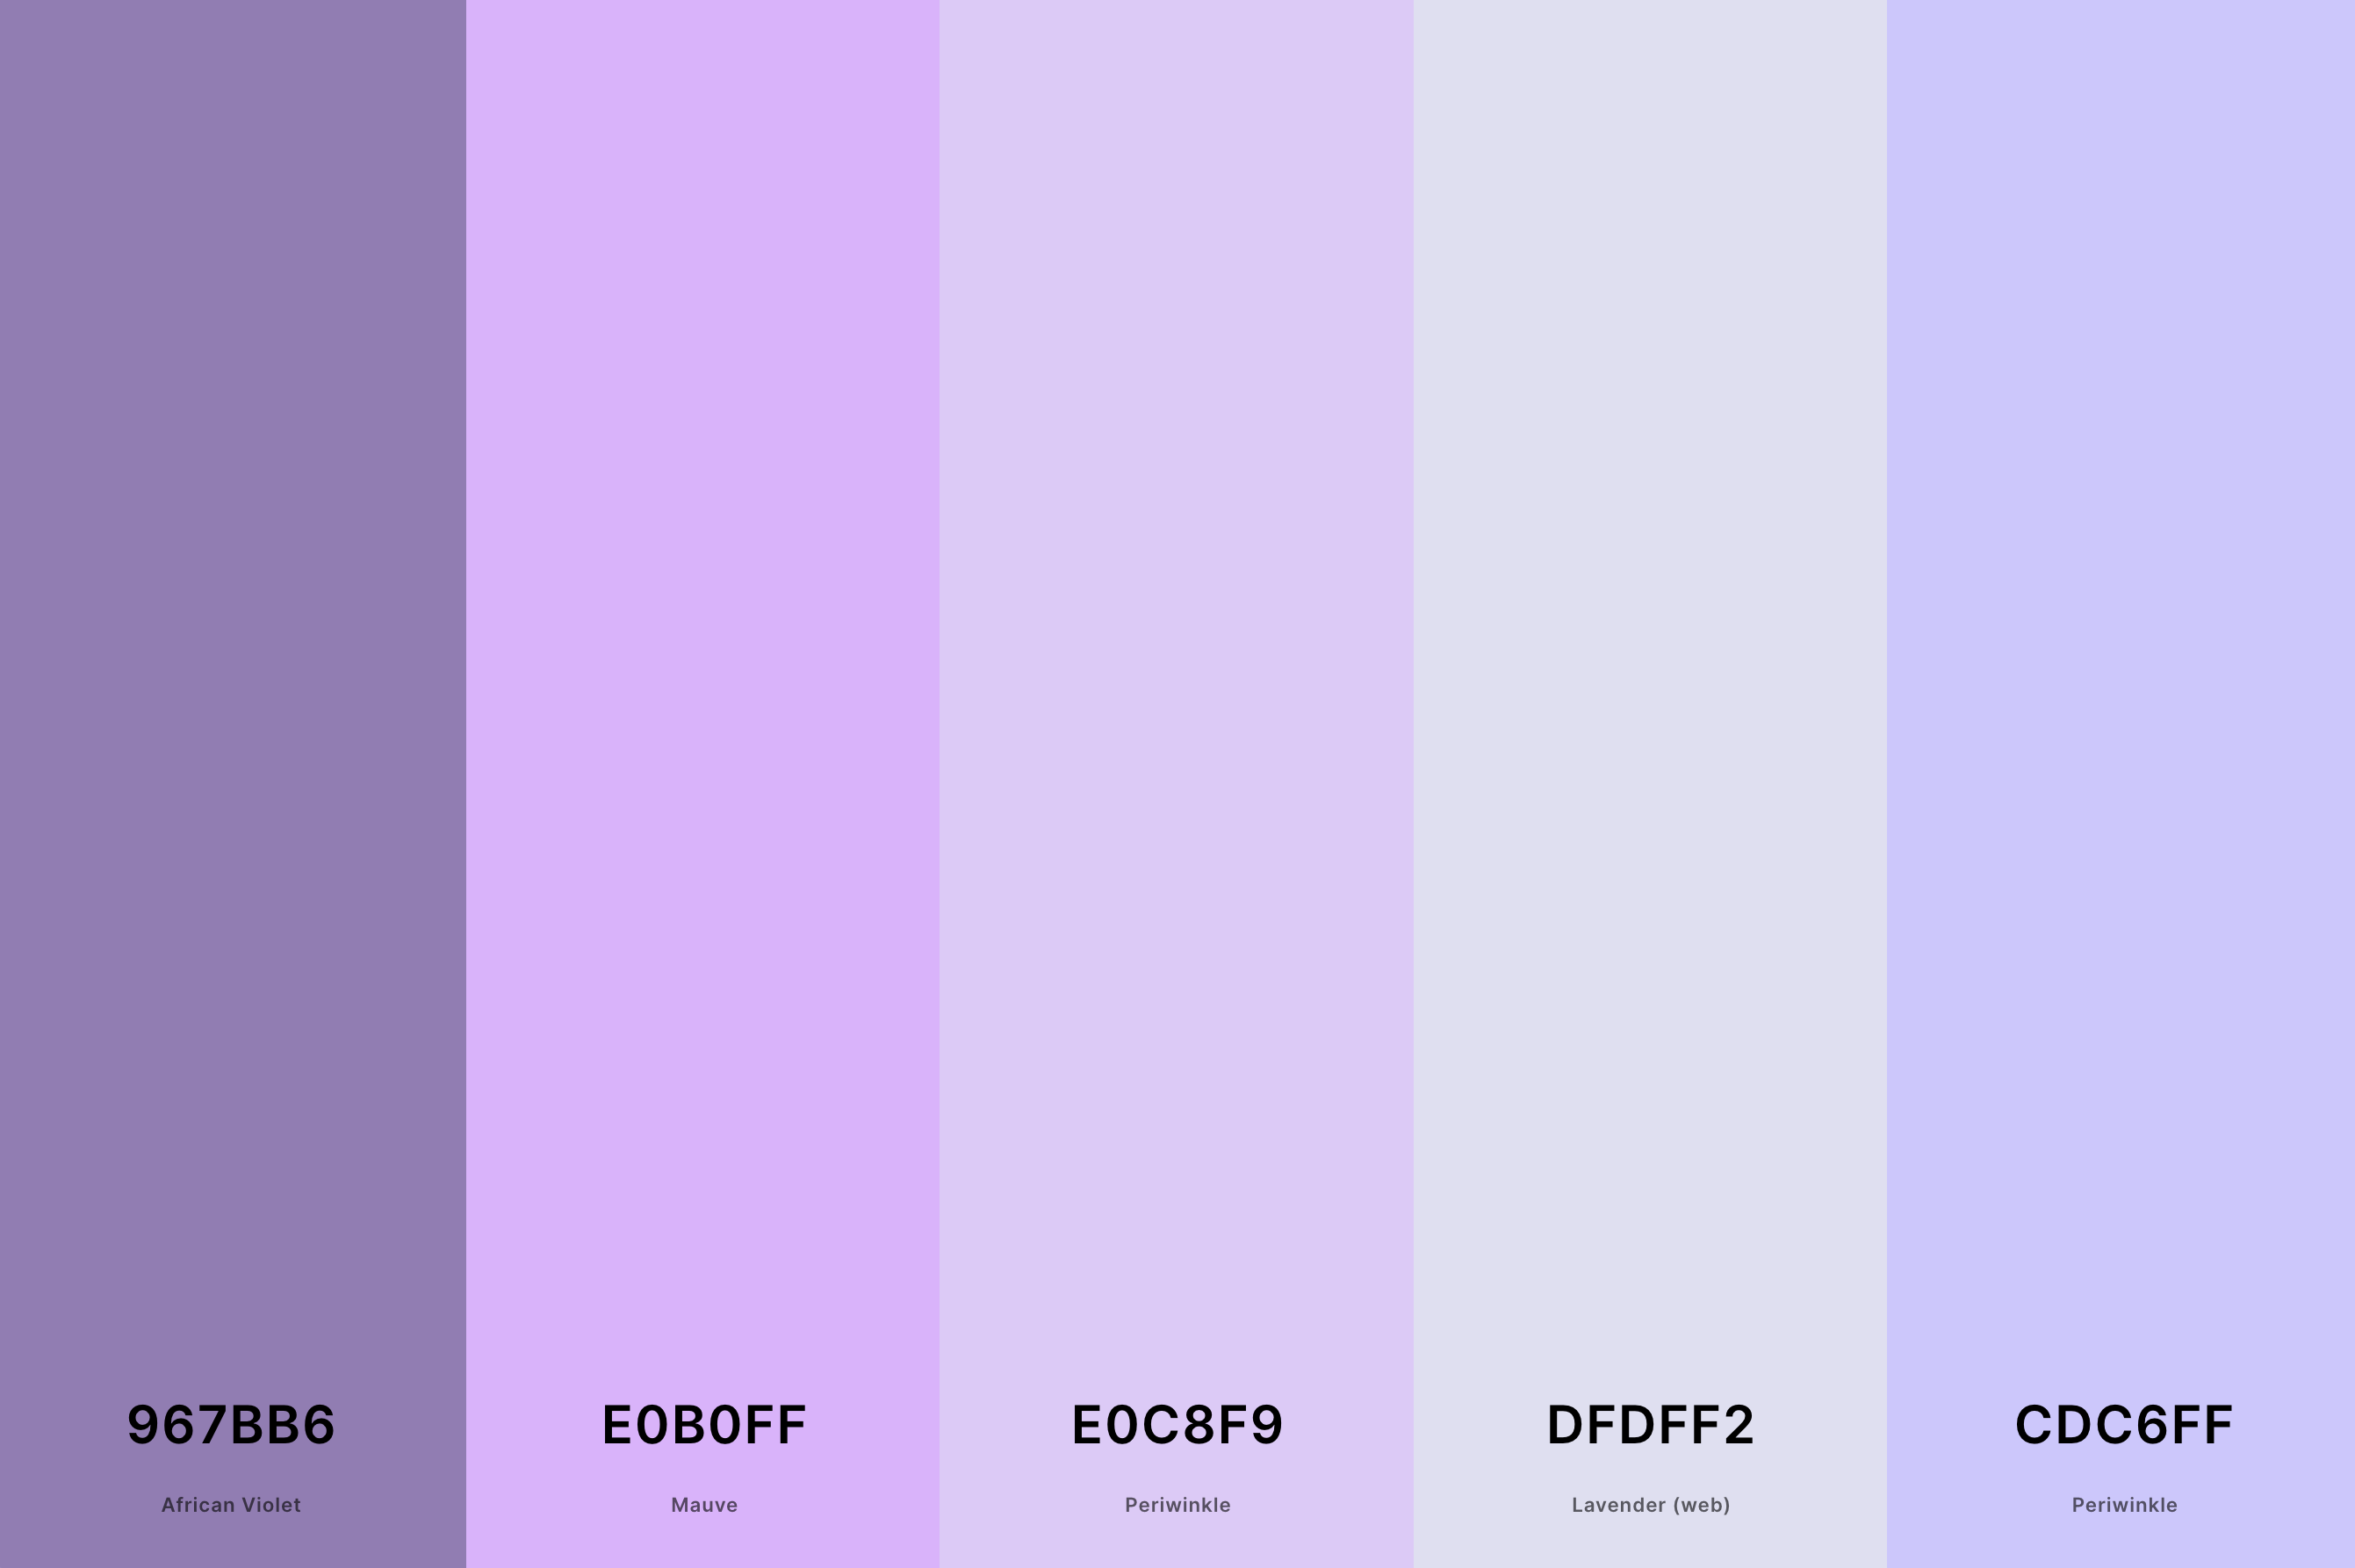 20. Mauve And Lavender Color Palette Color Palette with African Violet (Hex #967BB6) + Mauve (Hex #E0B0FF) + Periwinkle (Hex #E0C8F9) + Lavender (Web) (Hex #DFDFF2) + Periwinkle (Hex #CDC6FF) Color Palette with Hex Codes